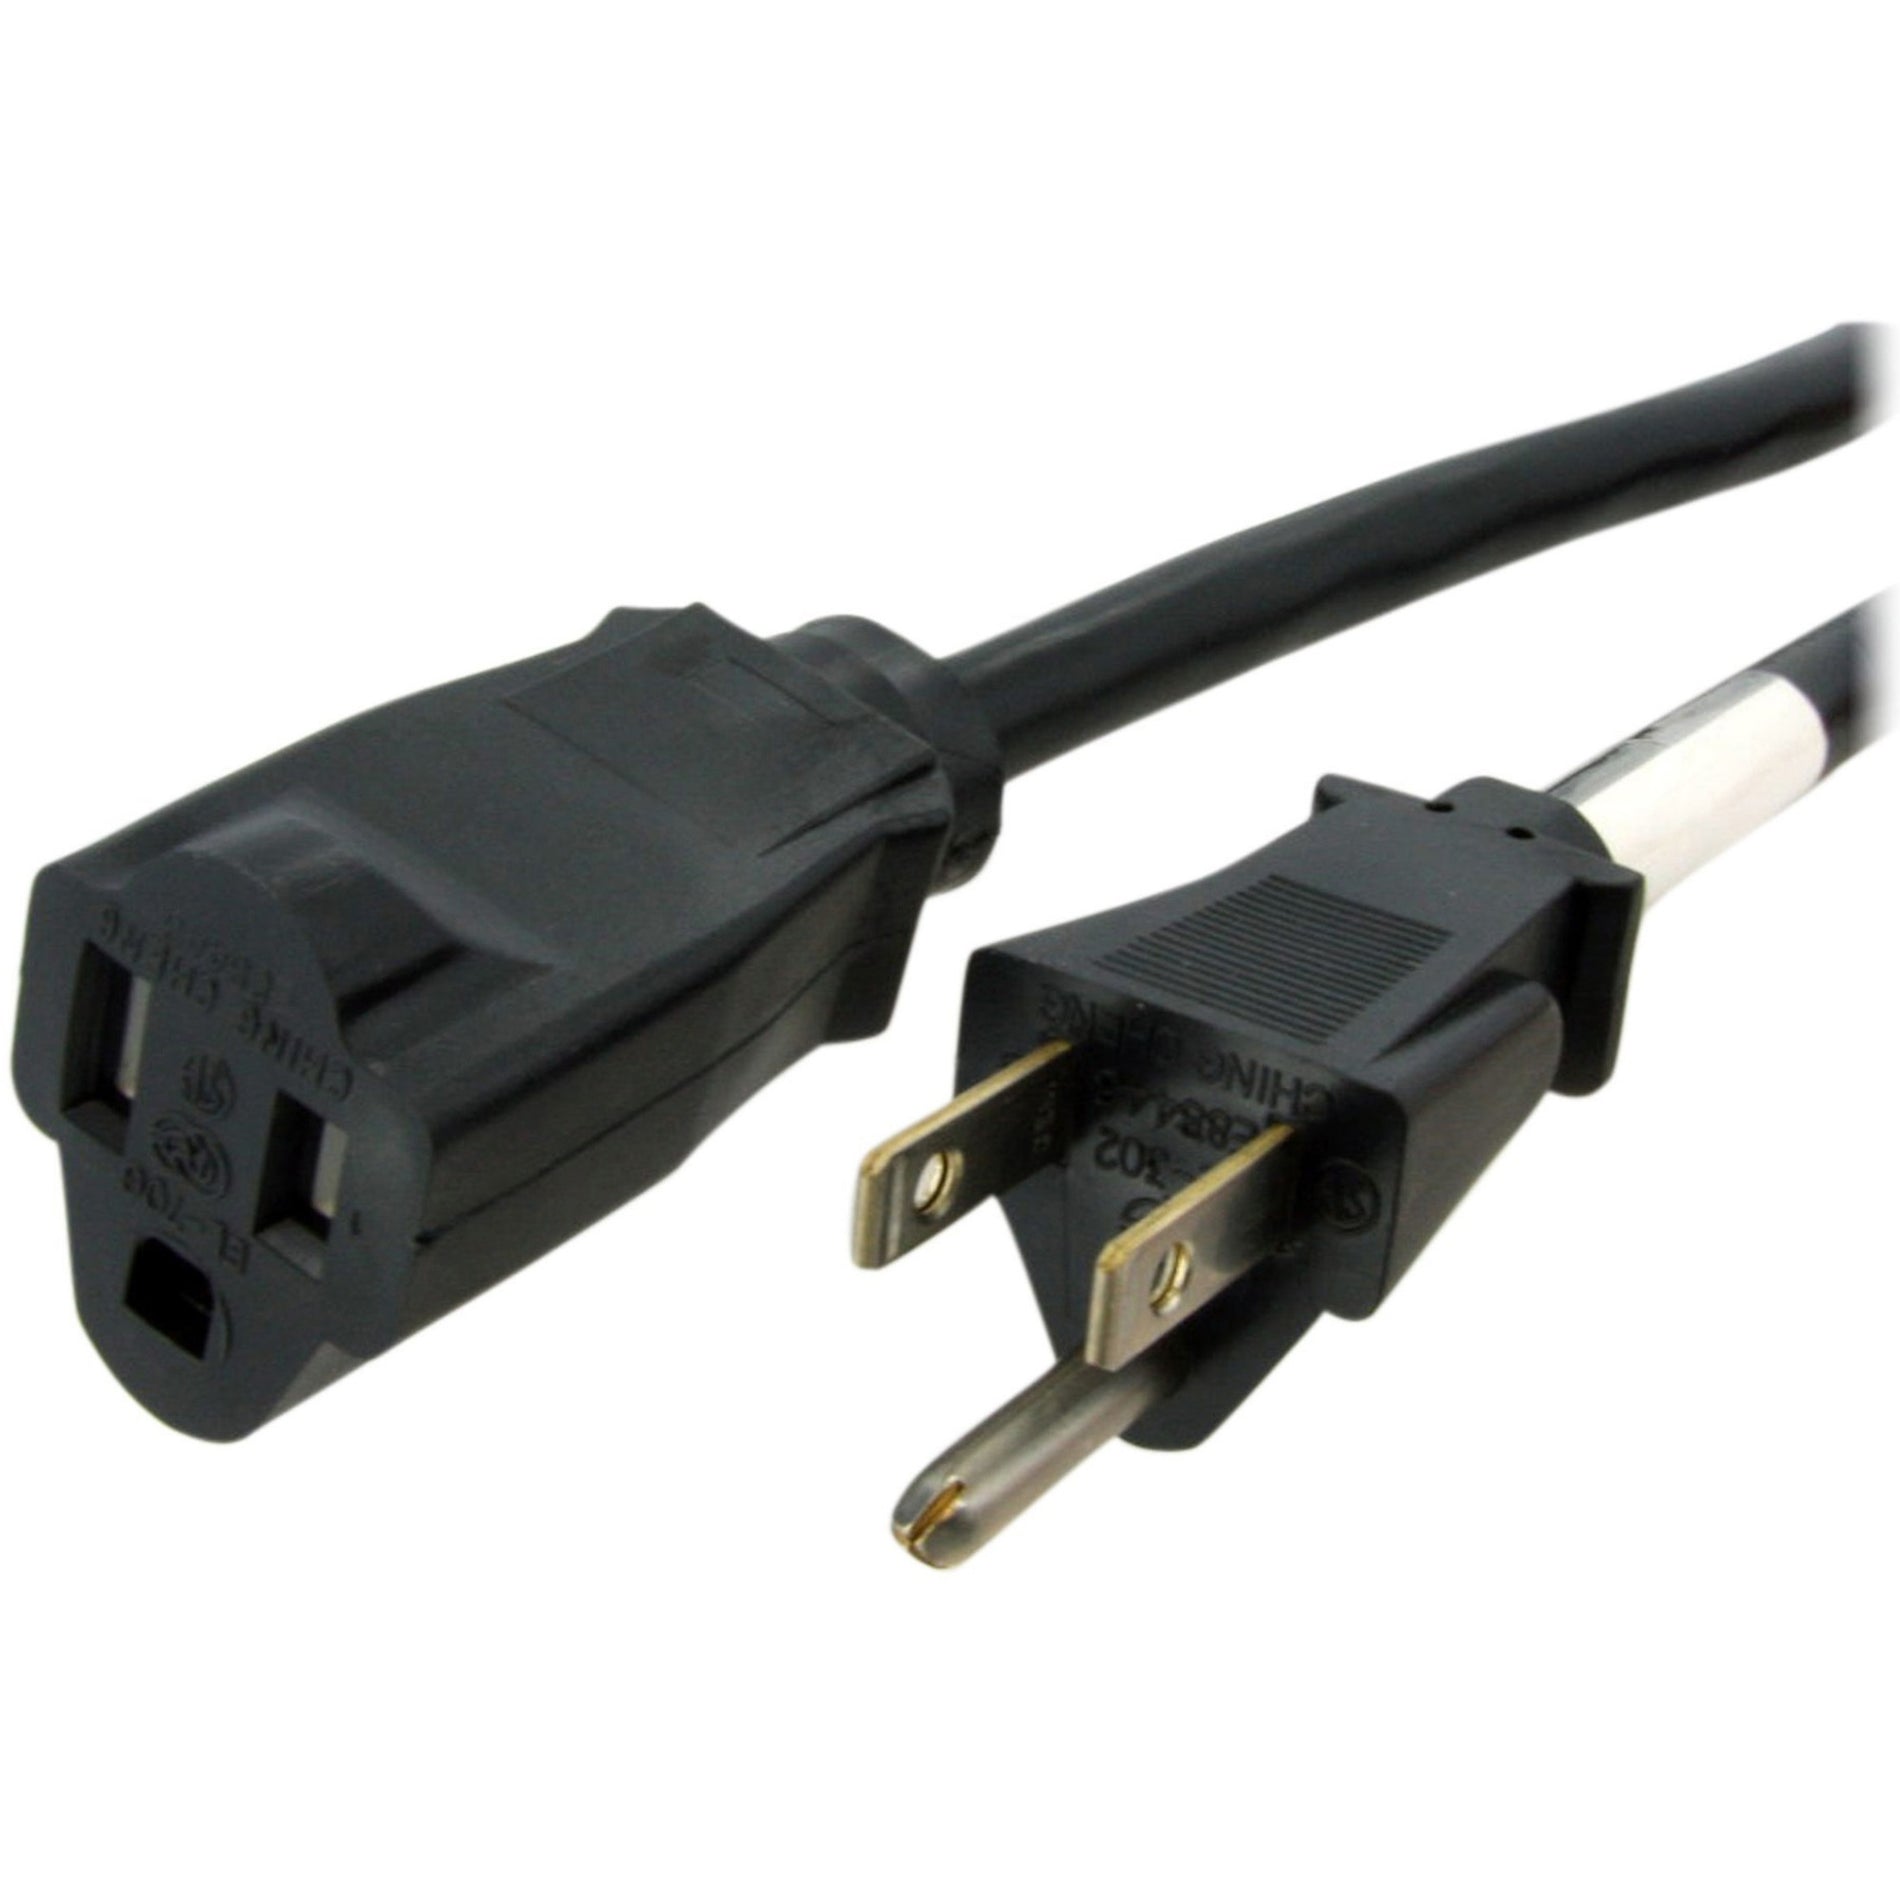 StarTech.com PAC101146 6 ft 14 AWG Power Cord Extension - NEMA 5-15R to NEMA 5-15P 125V AC 15A Black